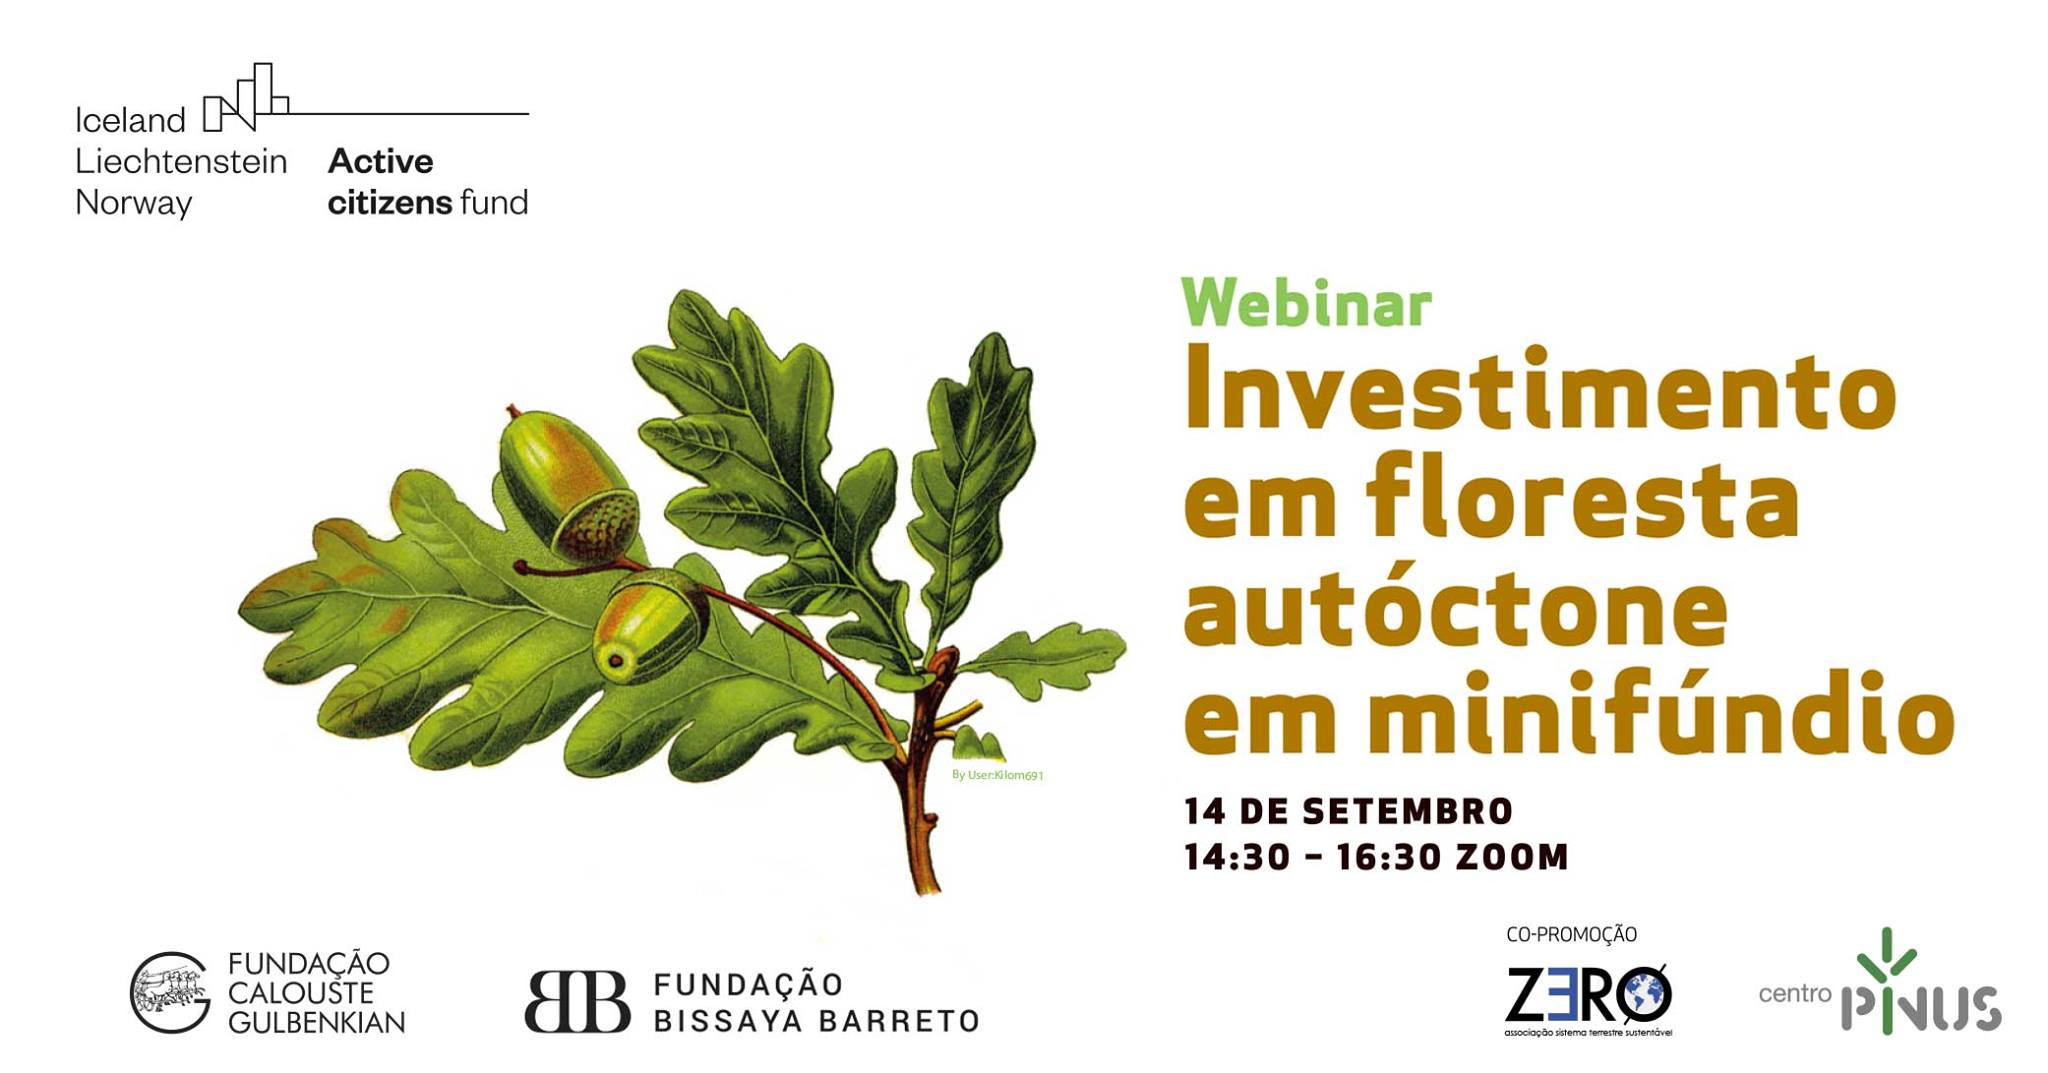 Webinar “Investimento em floresta autóctone em minifúndio”